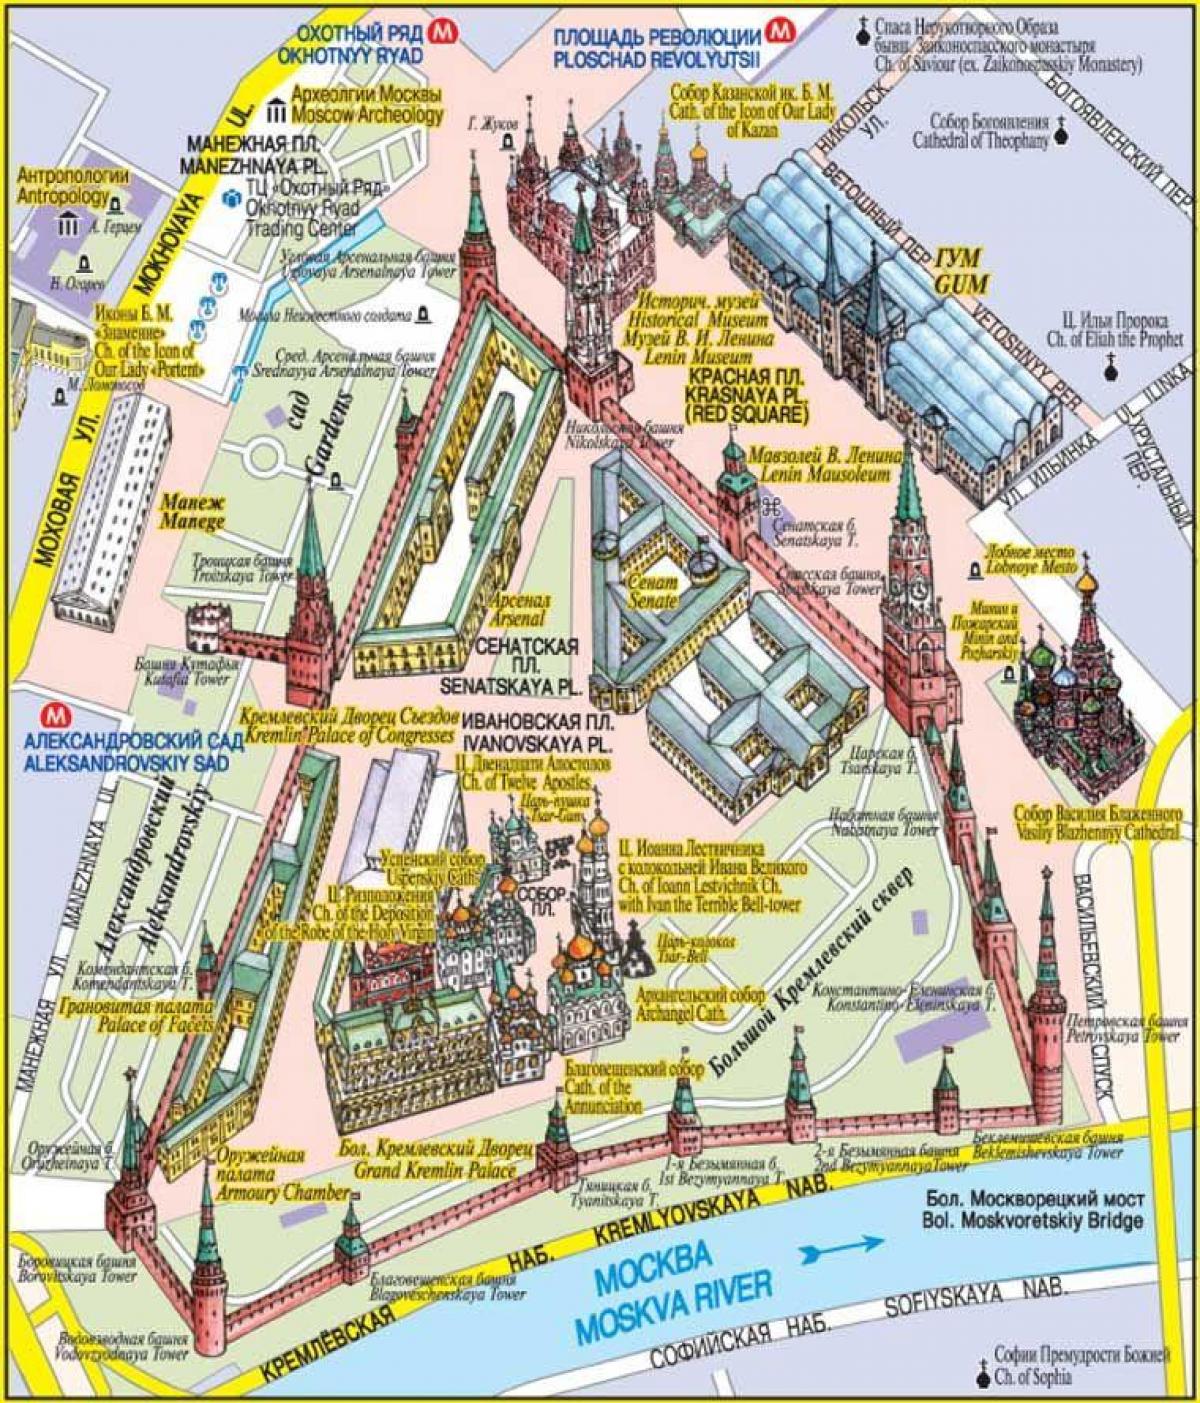 Plac czerwony mapie Moskwy